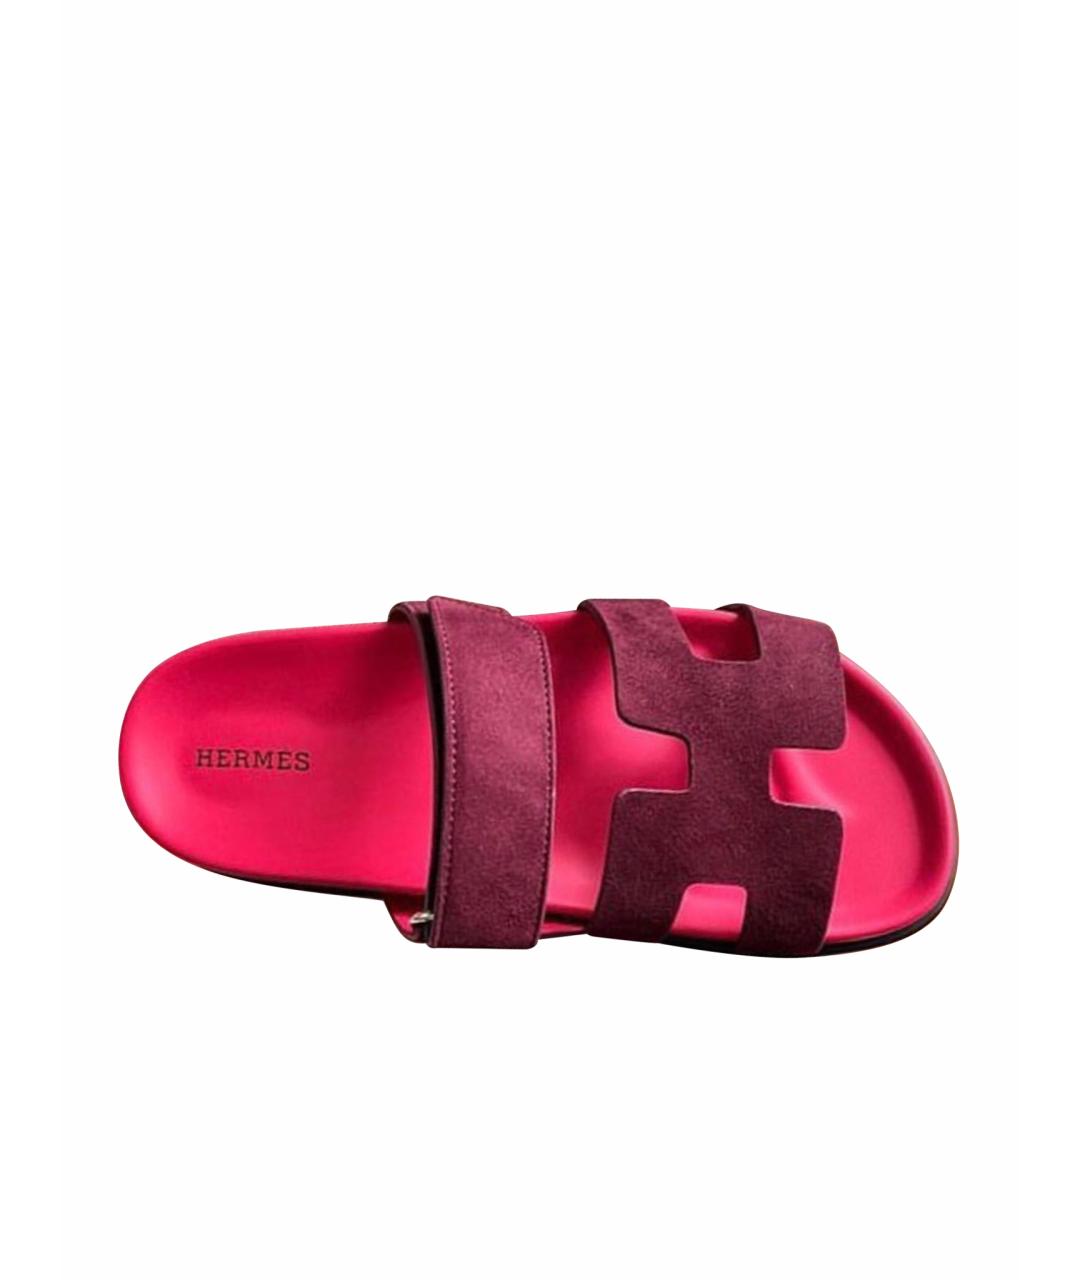 HERMES PRE-OWNED Красные кожаные сандалии, фото 1